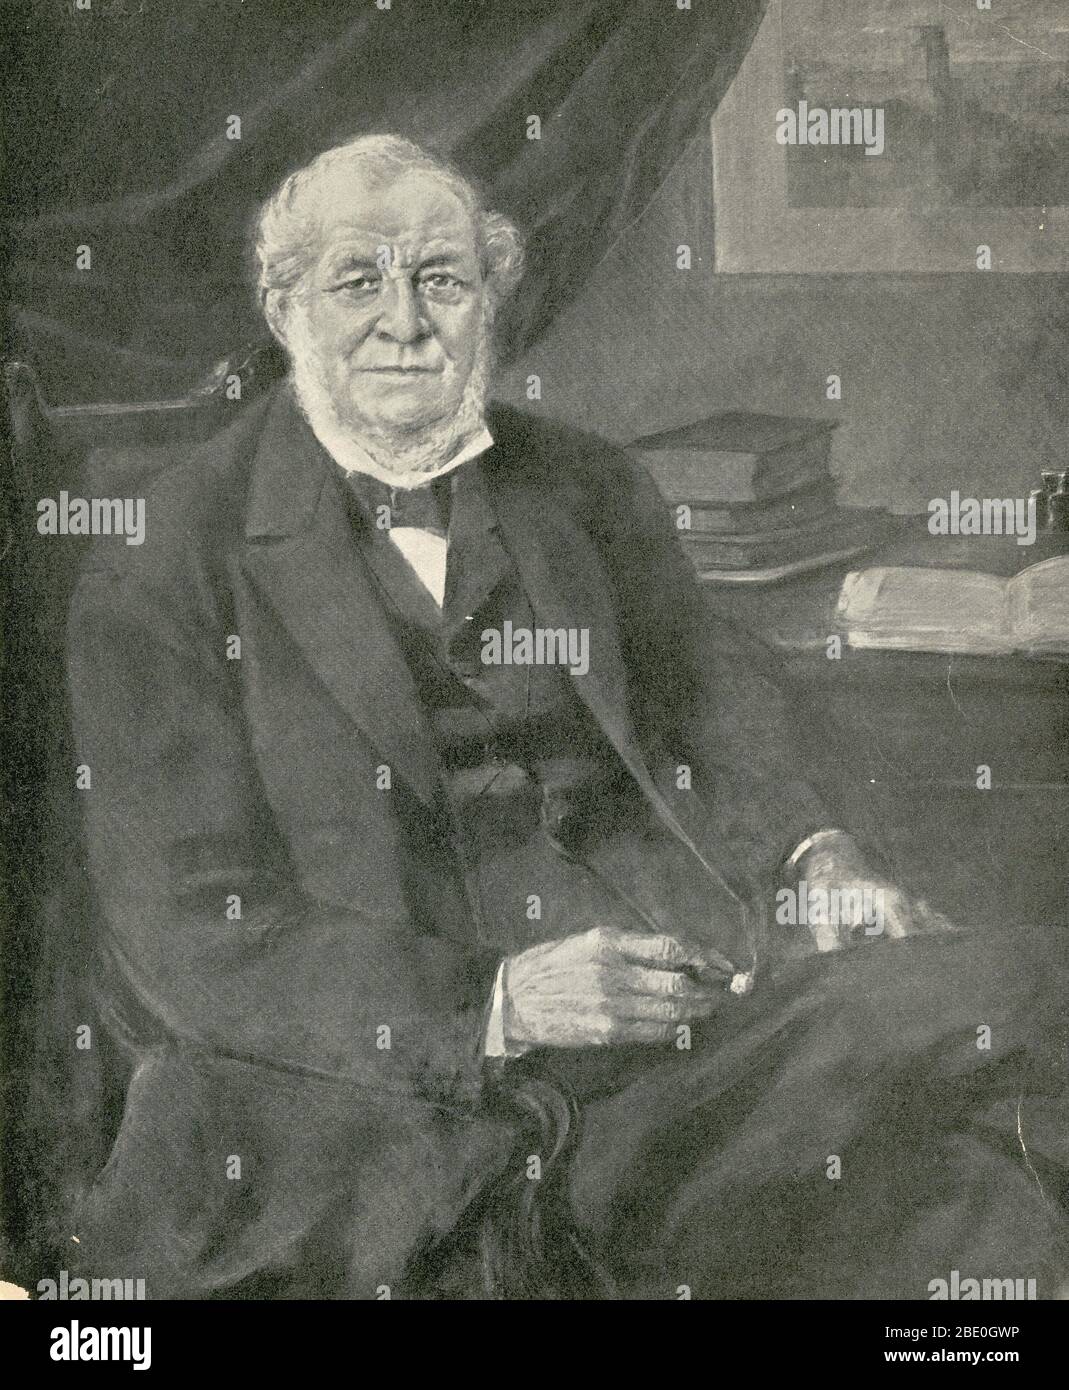 Robert Wilhelm Eberhard Bunsen (30 marzo 1811 – Augusta, 16 marzo 1899) è stato un . Studiò gli spettri di emissione degli elementi riscaldati e scoprì cesio e rubidio con il fisico Gustav Kirchhoff. Bunsen sviluppò diversi metodi gas-analitici ed era un pioniere nella fotochimica. Con il suo assistente di laboratorio, Peter Desaga, ha sviluppato il bruciatore Bunsen, un miglioramento dei bruciatori da laboratorio allora in uso. Bunsen era uno degli scienziati più ammirati dalla sua generazione. Era un maestro, devoto ai suoi studenti, e a lui erano ugualmente devoti. Come un Foto Stock